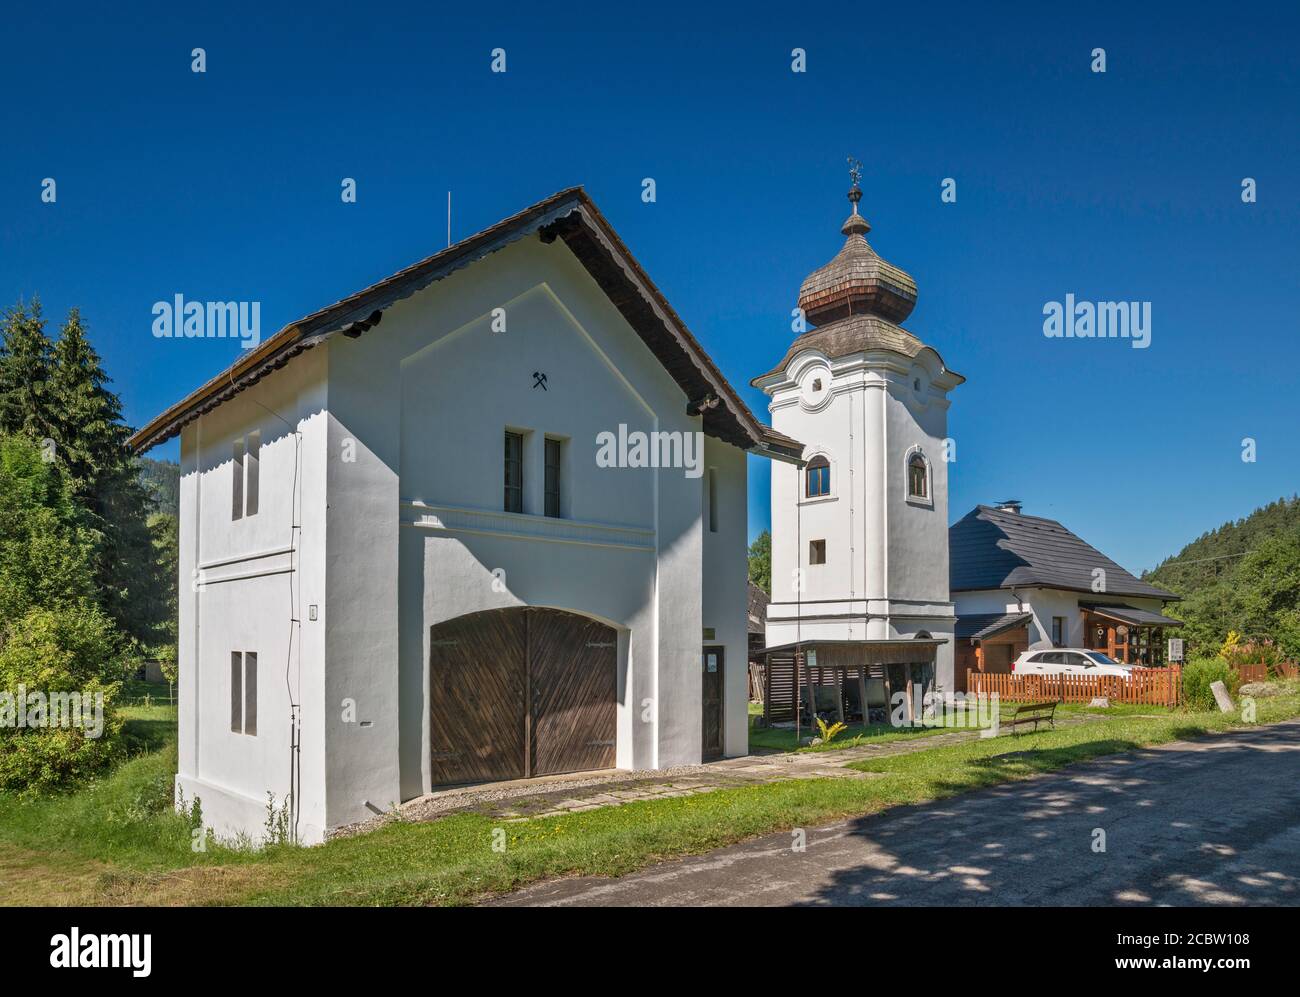 Museo Vaznica di Miniere e Metallurgia e Klopacka, campanile in stile barocco a Liptovsky Hradok, zona Liptov, Regione Zilina, Slovacchia Foto Stock